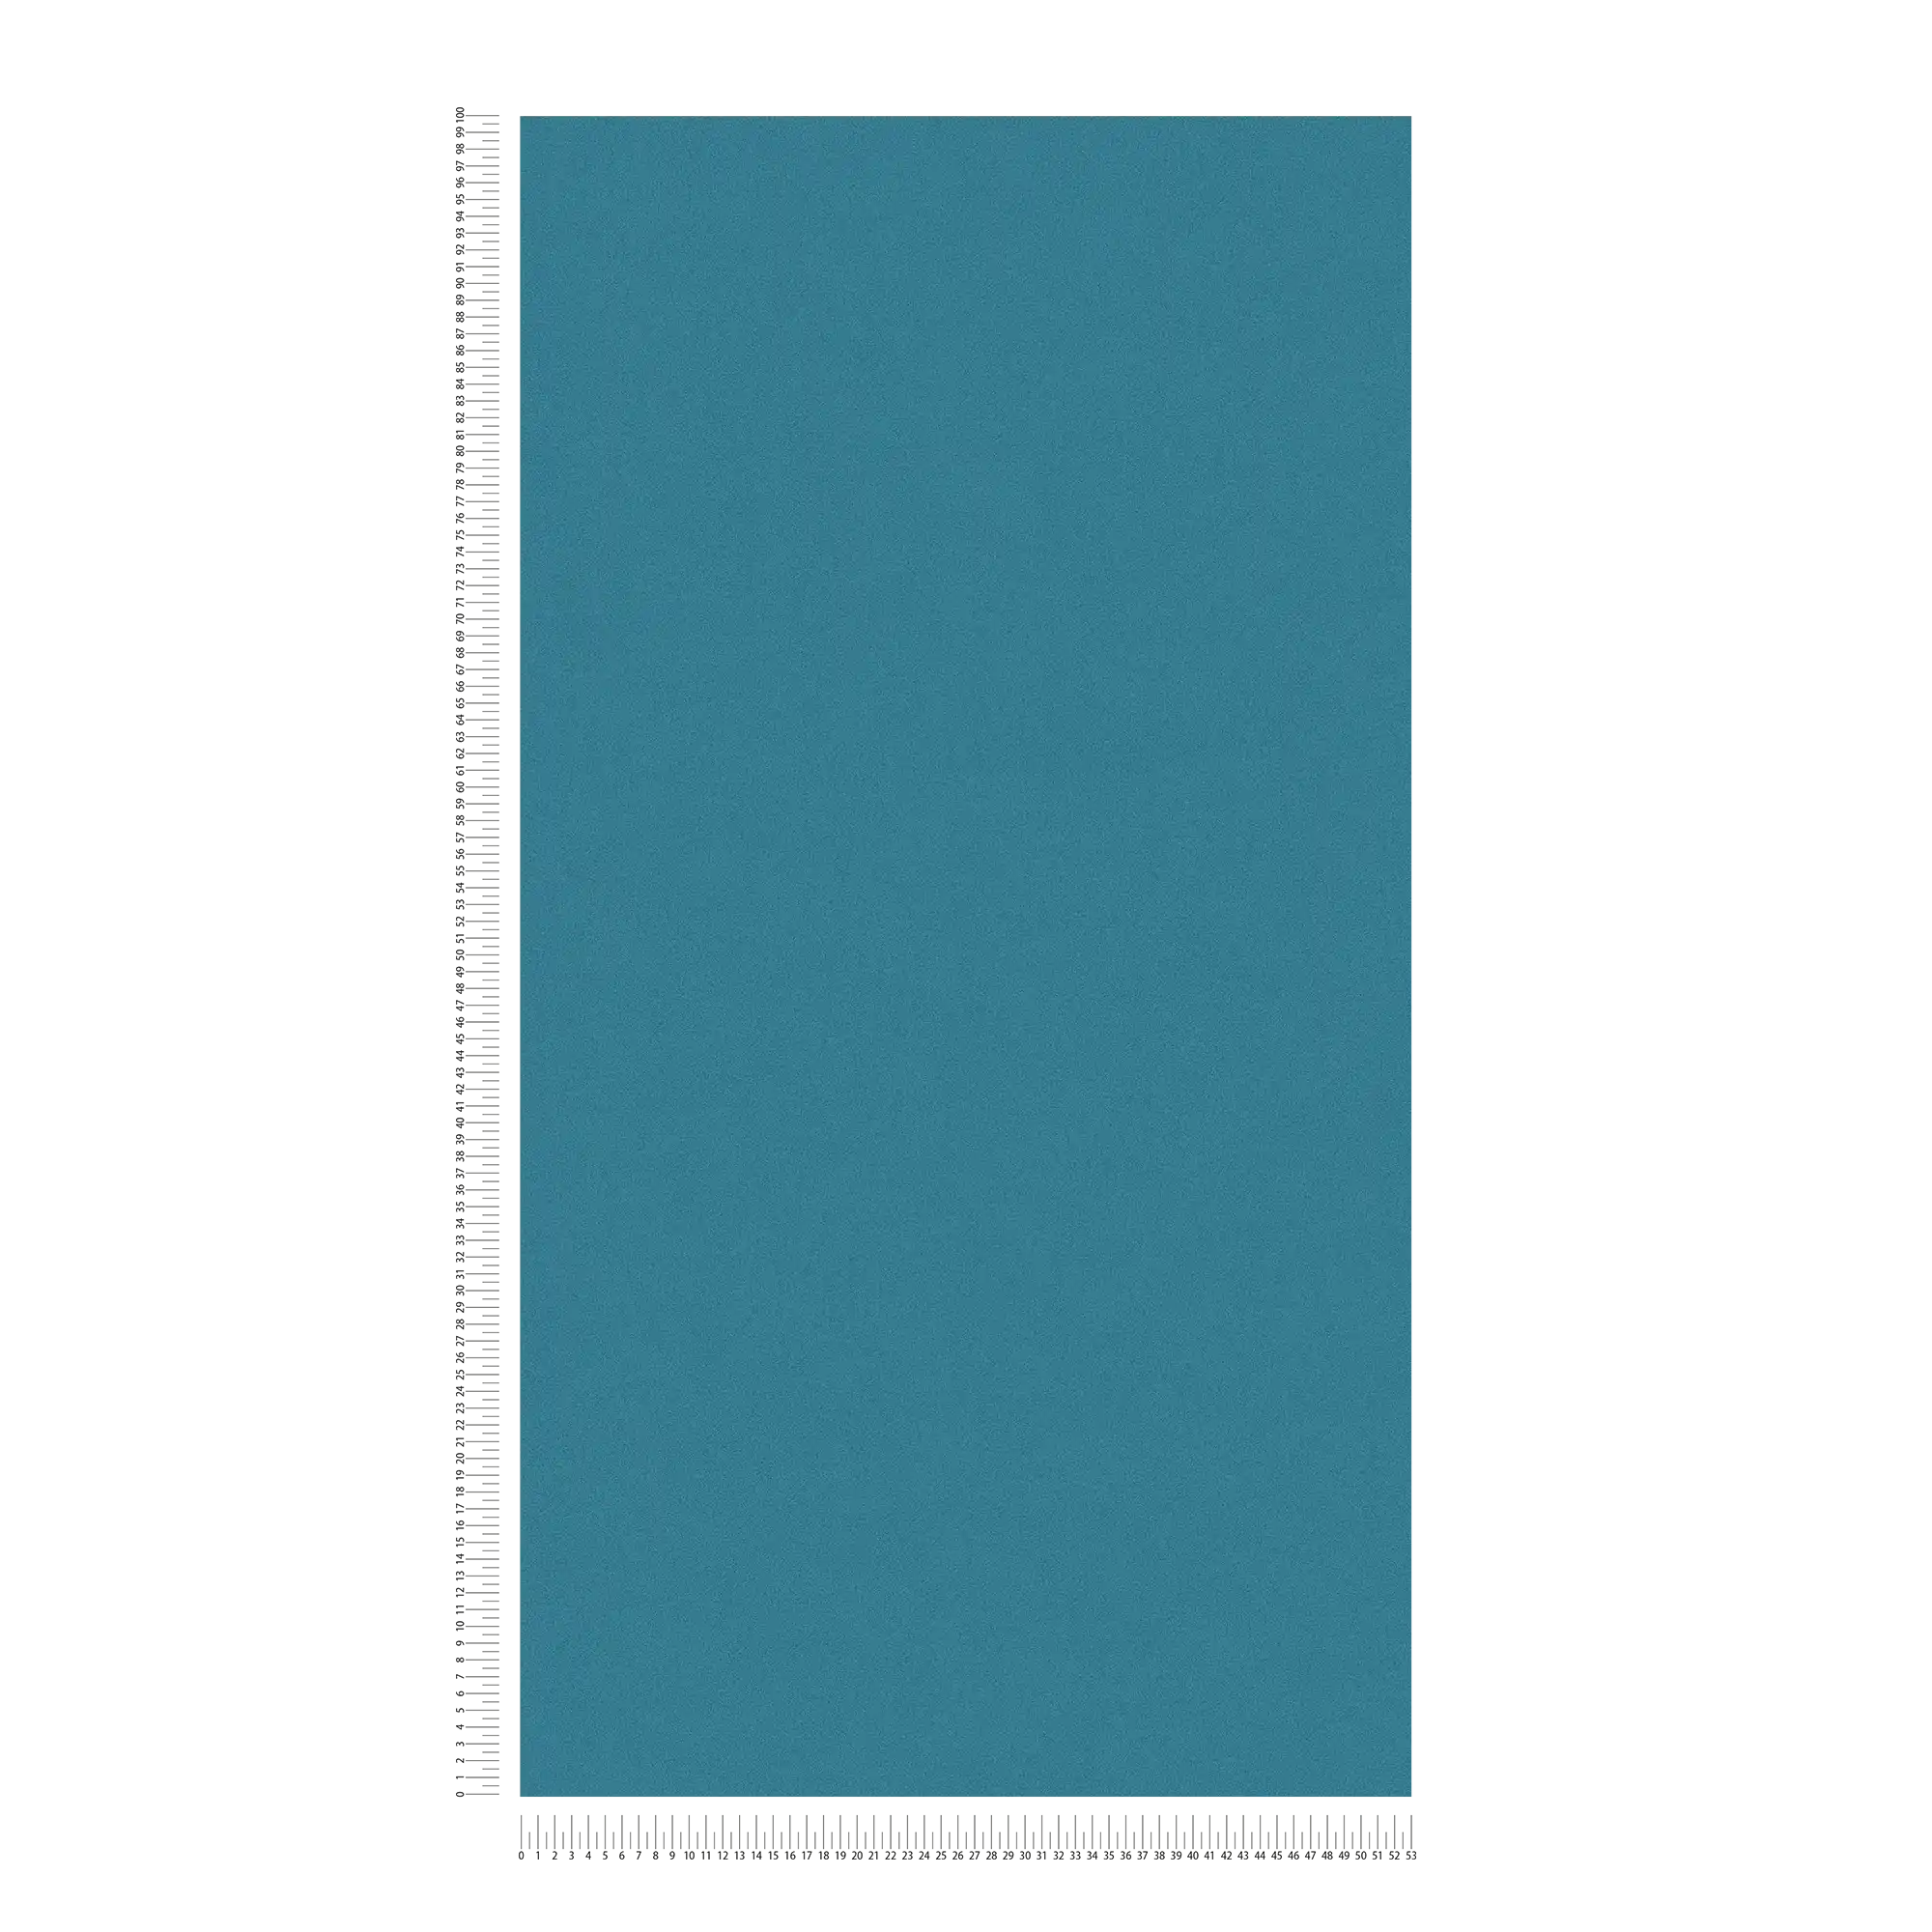             Papier peint bleu foncé turquoise, satiné brillant & motifs structurés
        